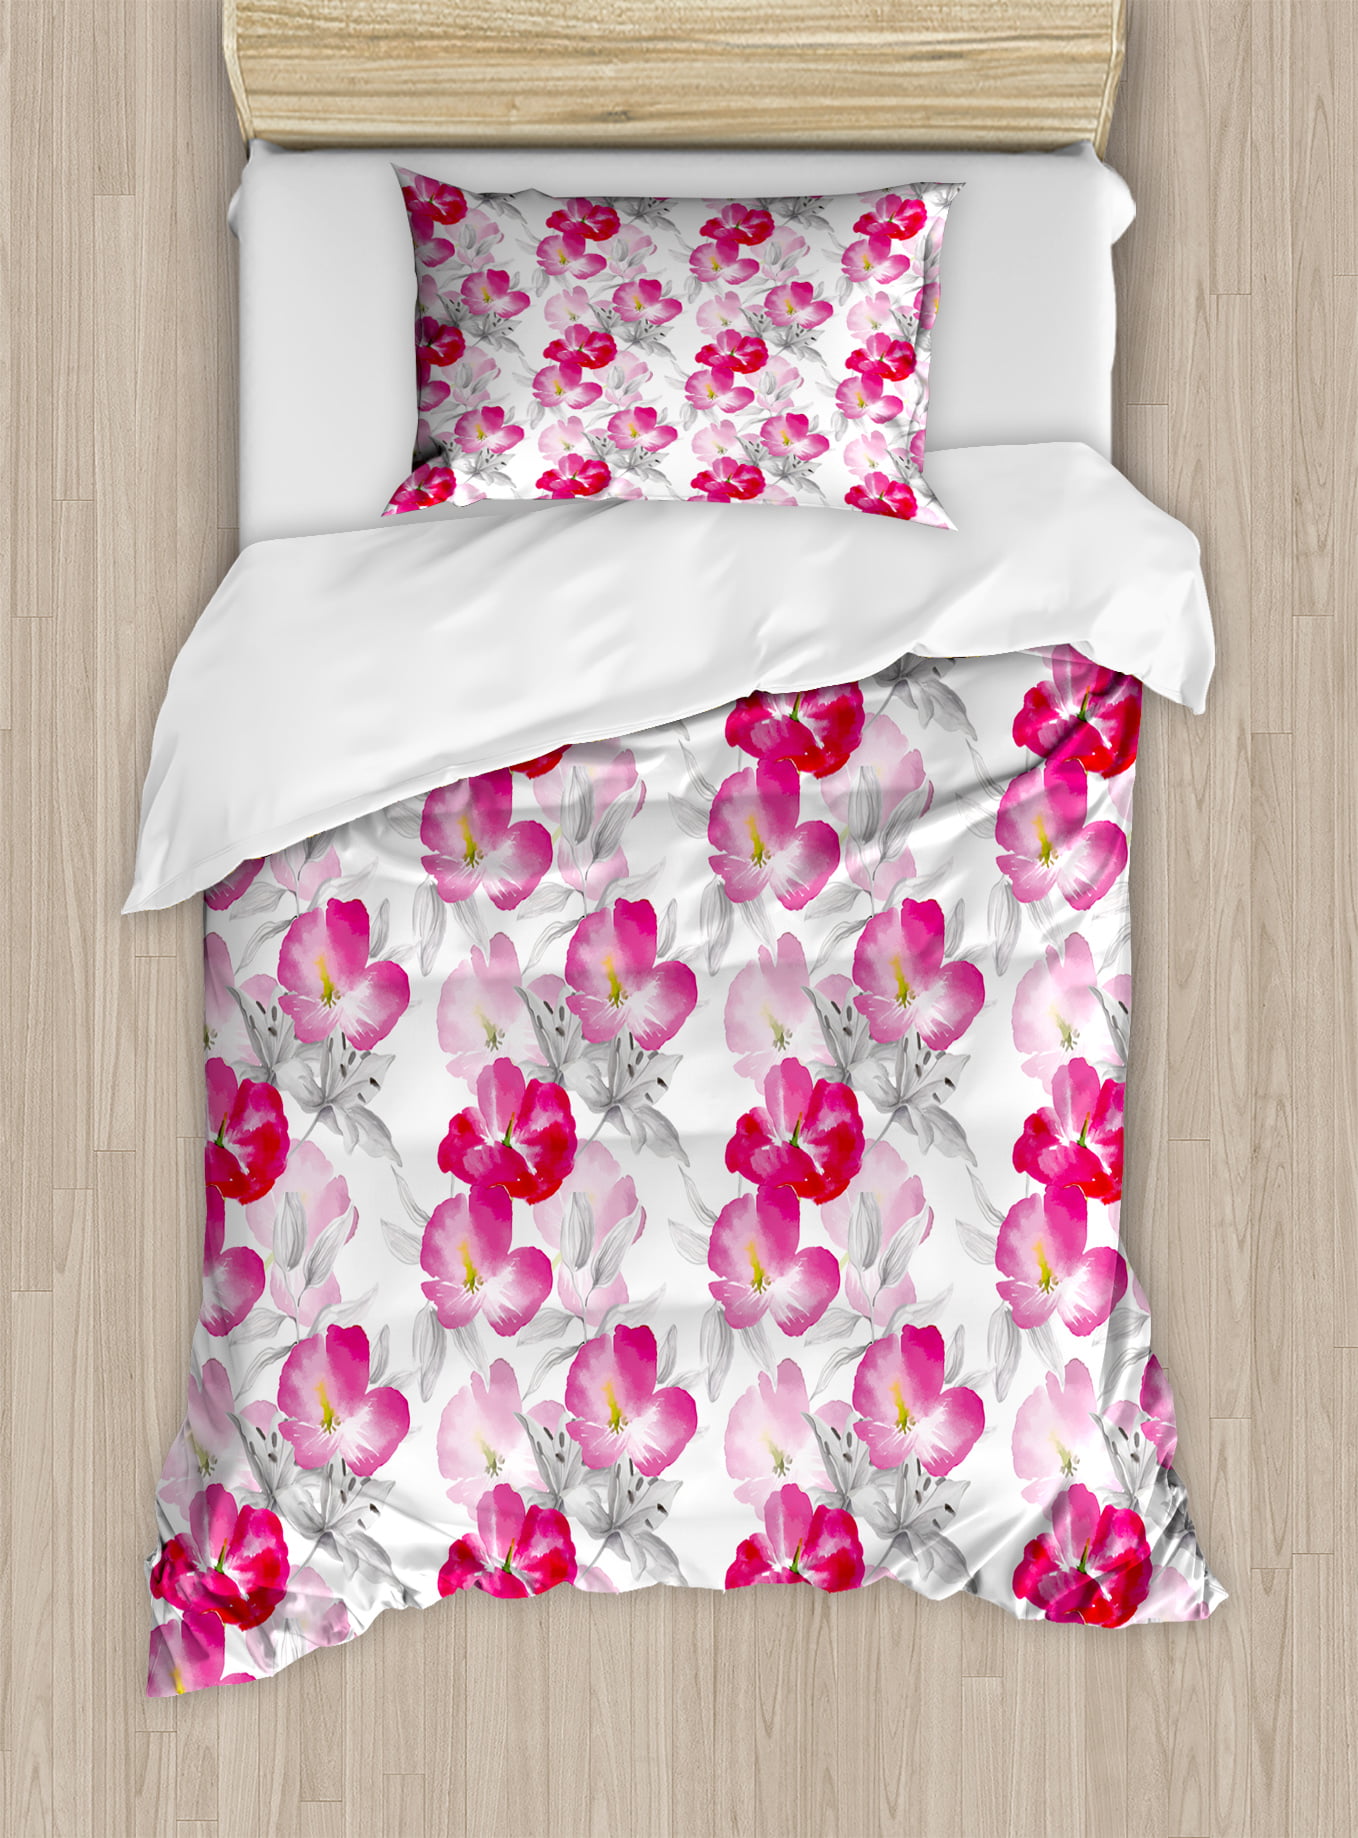 Floral Twin Size Duvet Cover Set, Watercolor Poppy Flowers Vivid Color ...